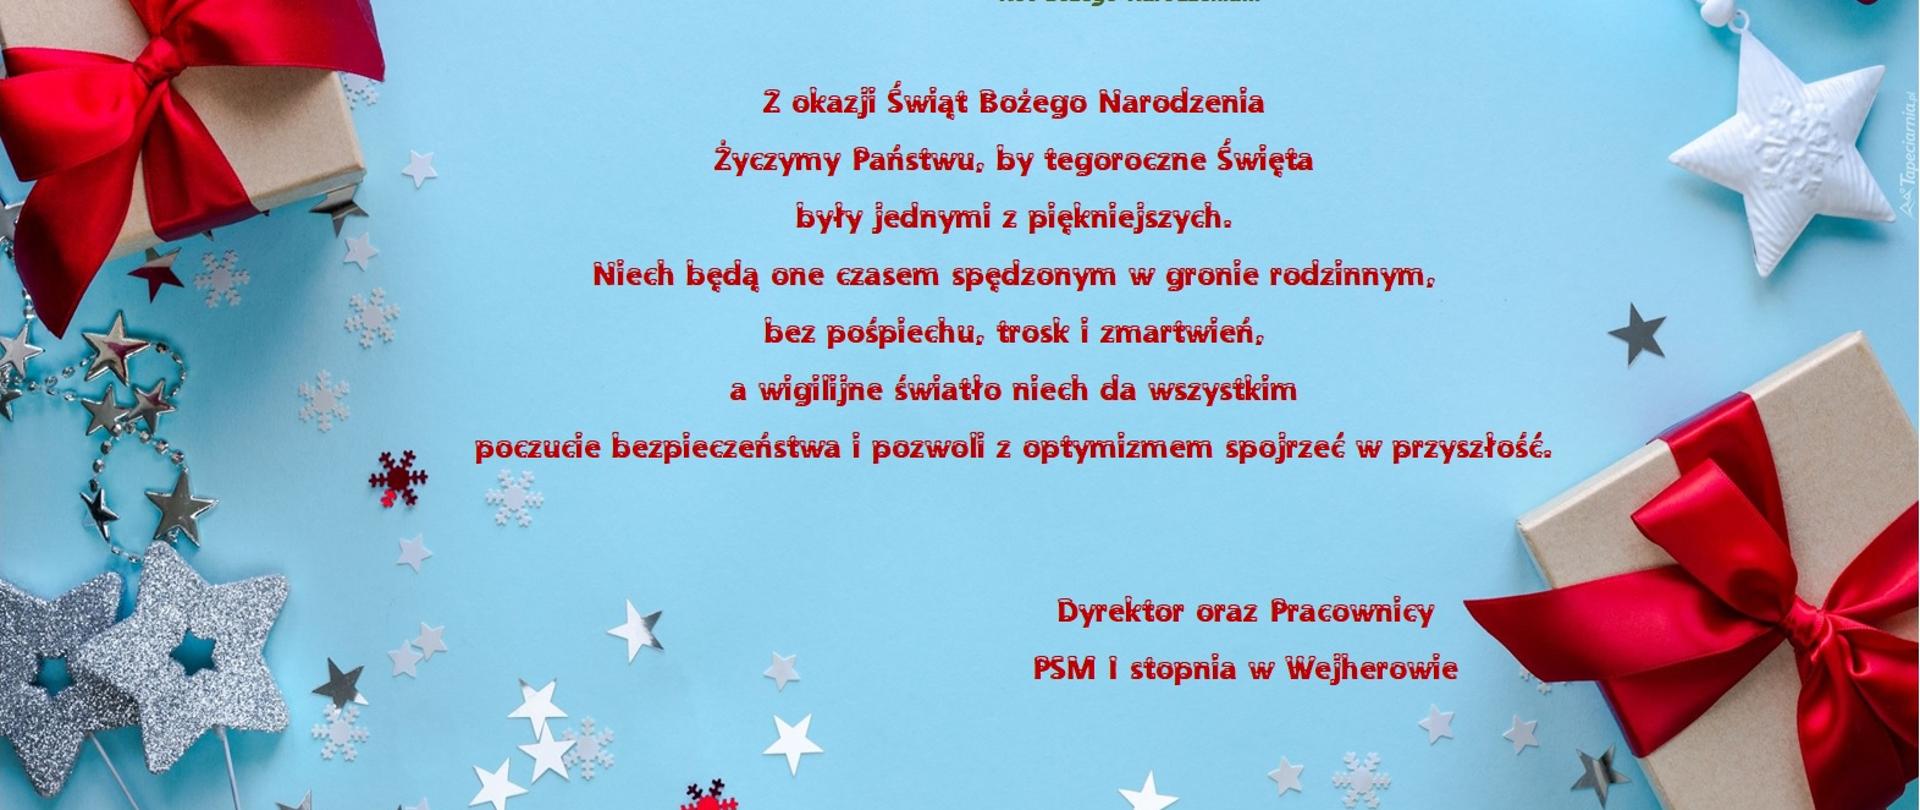 Grafika z tekstem życzeń świątecznych od dyrektora oraz pracowników PSM w Wejherowie. Na jasnoniebieskim tle zielone oraz czerwone litery. Po bokach elementy graficzne przedstawiające gałązki choinki, gwiazdki oraz prezenty z czerwonymi kokardami.